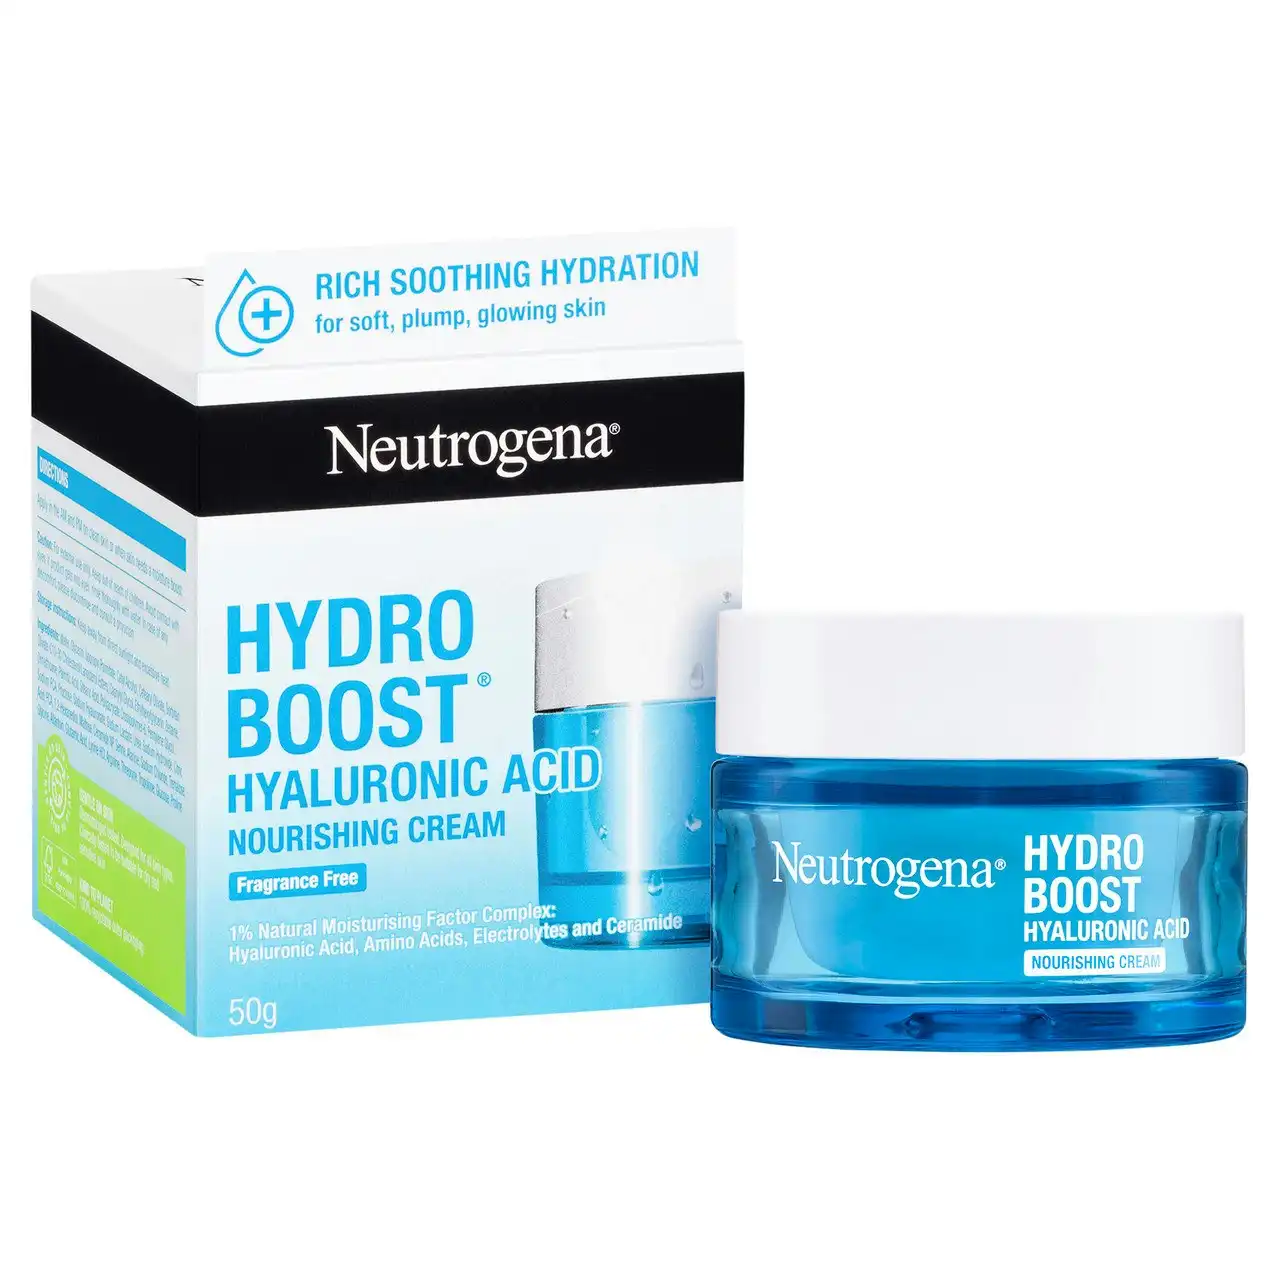 Neutrogena Hydro Boost Hyaluronic Acid Nourishing Cream Dry Skin Face Moisturiser 50g